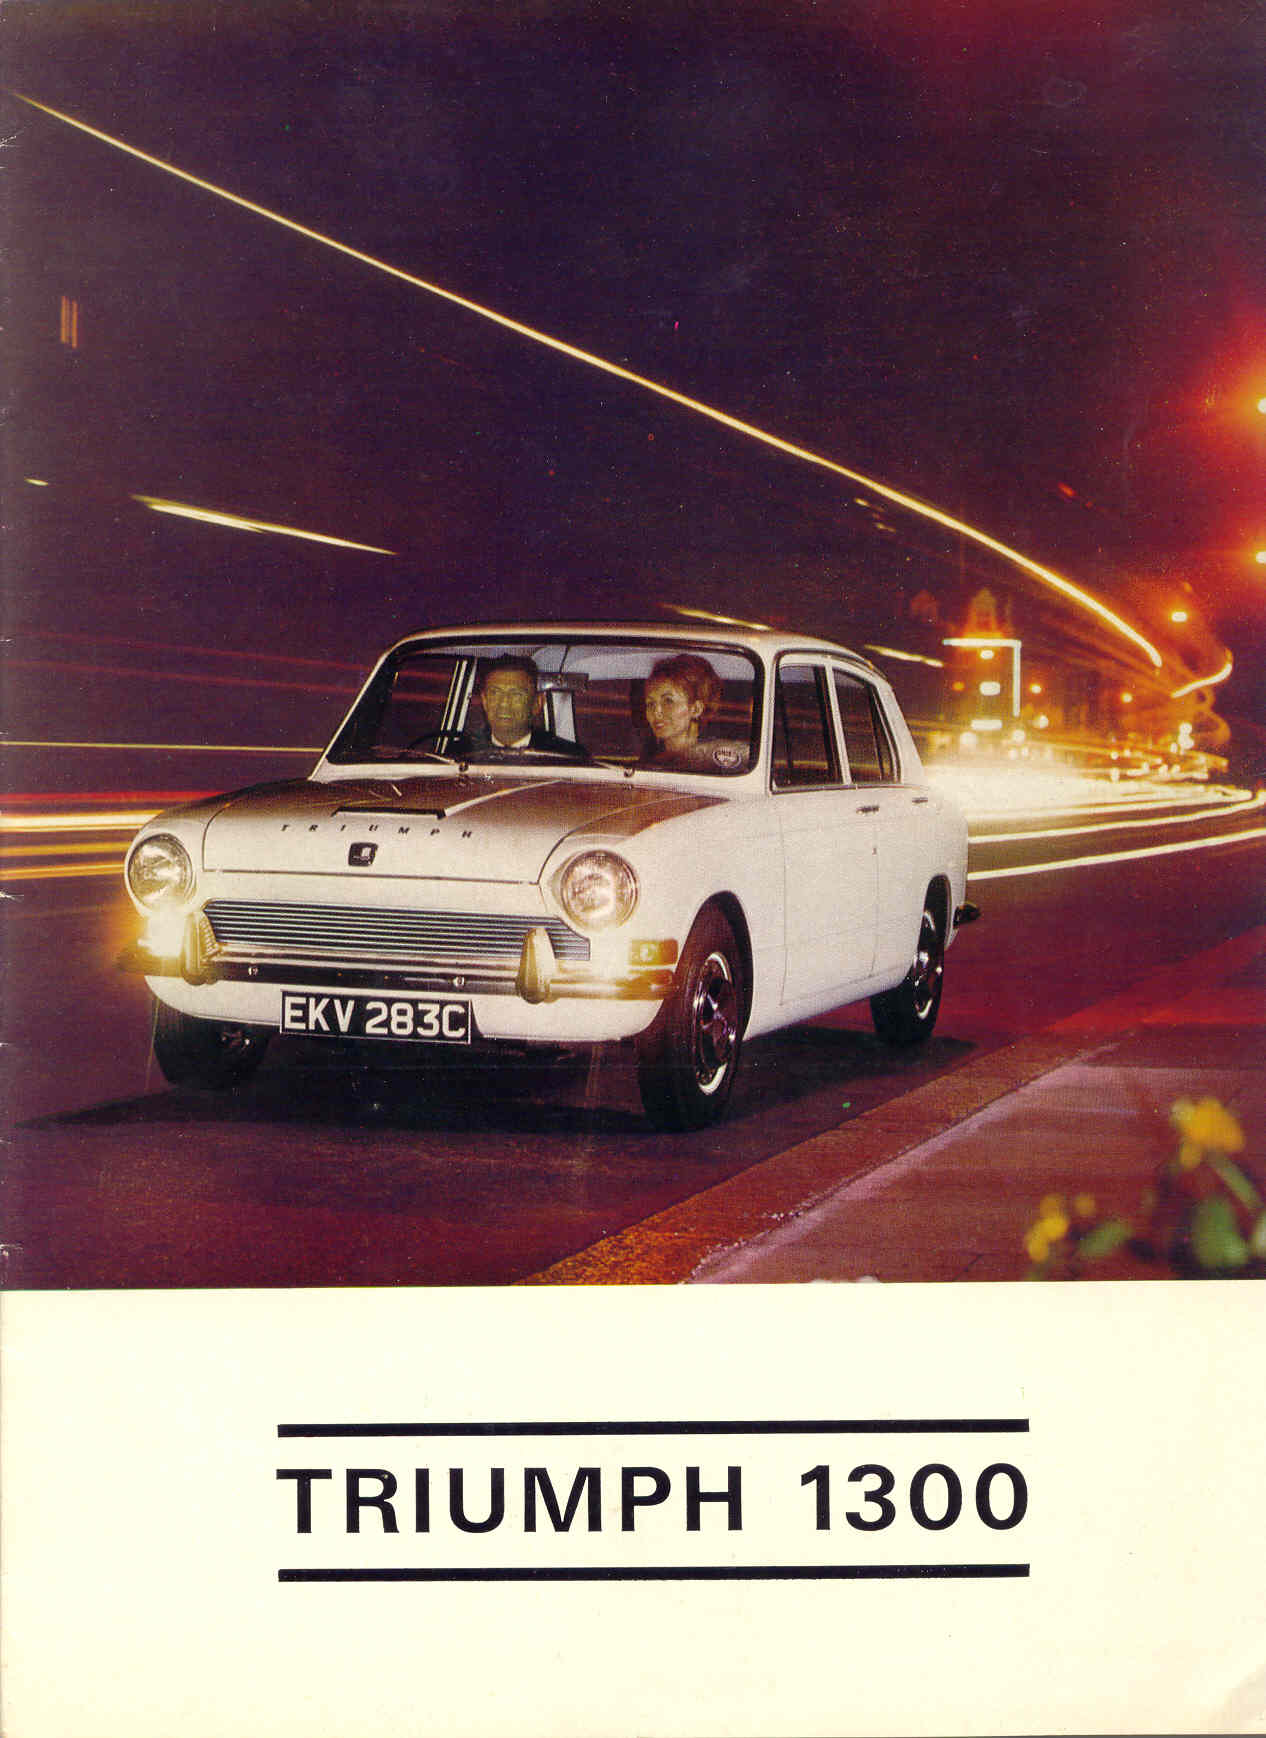 Triumph 1300!